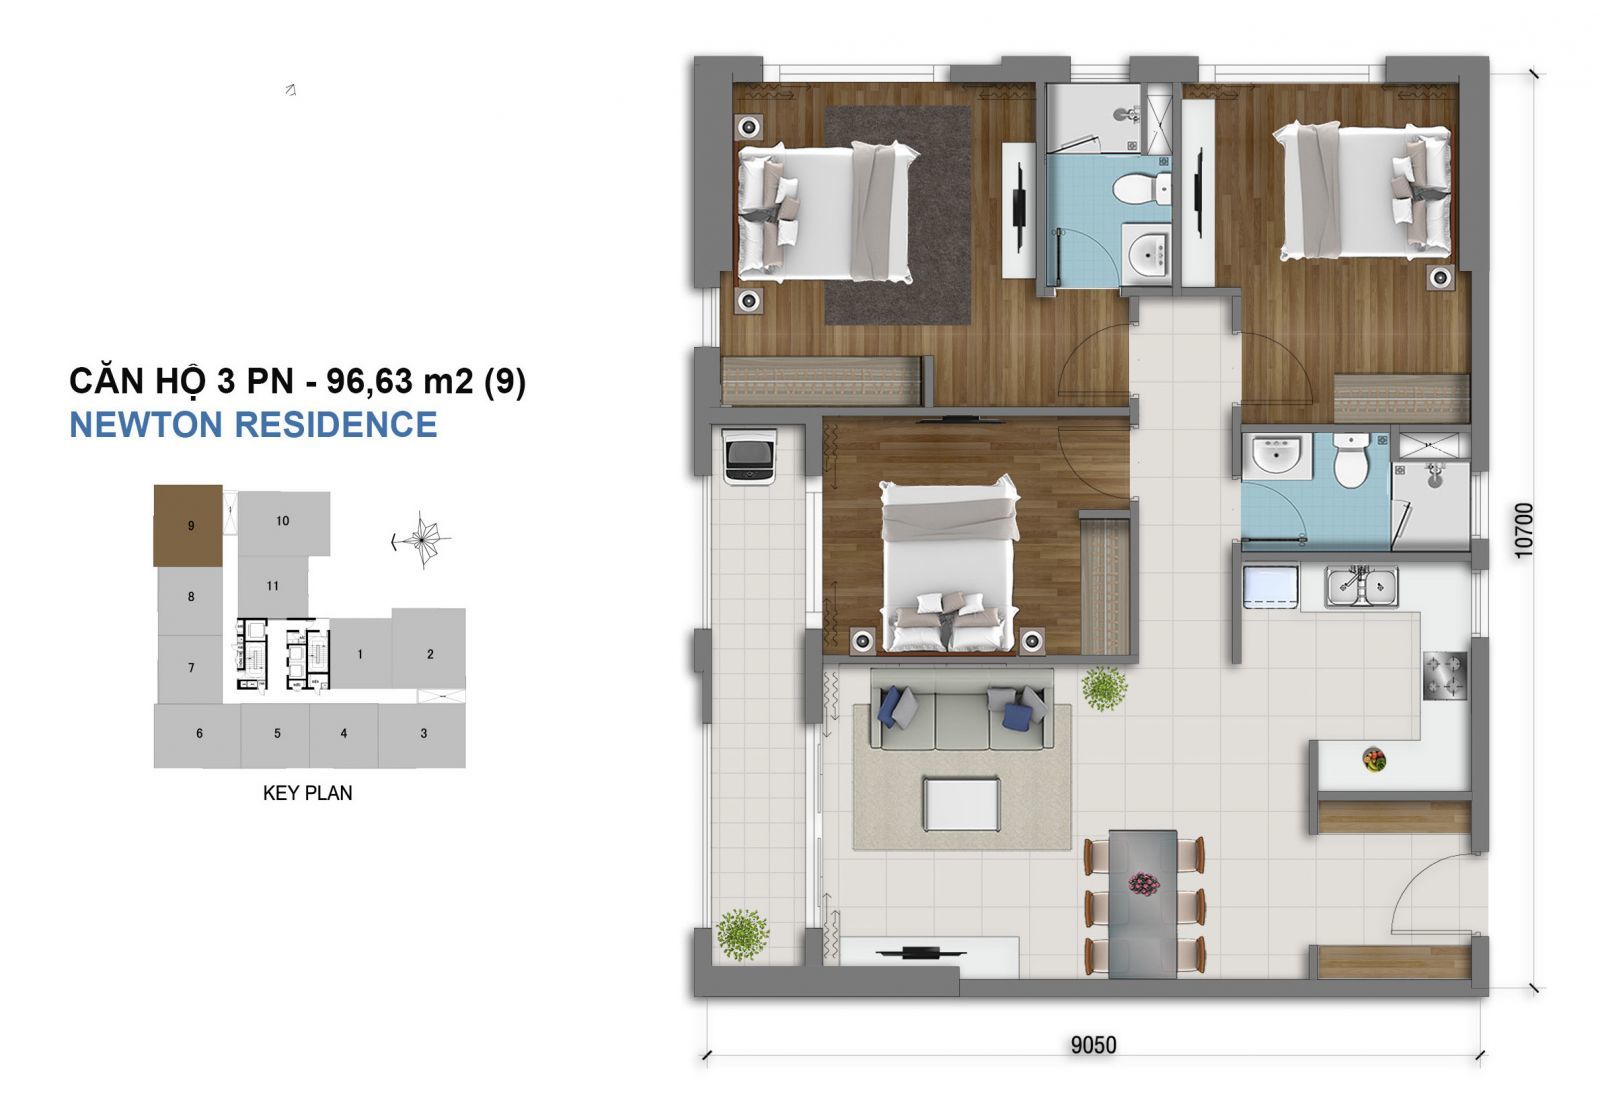 Mẫu căn hộ 3 phòng ngủ dự án Chung cư Newton Residence